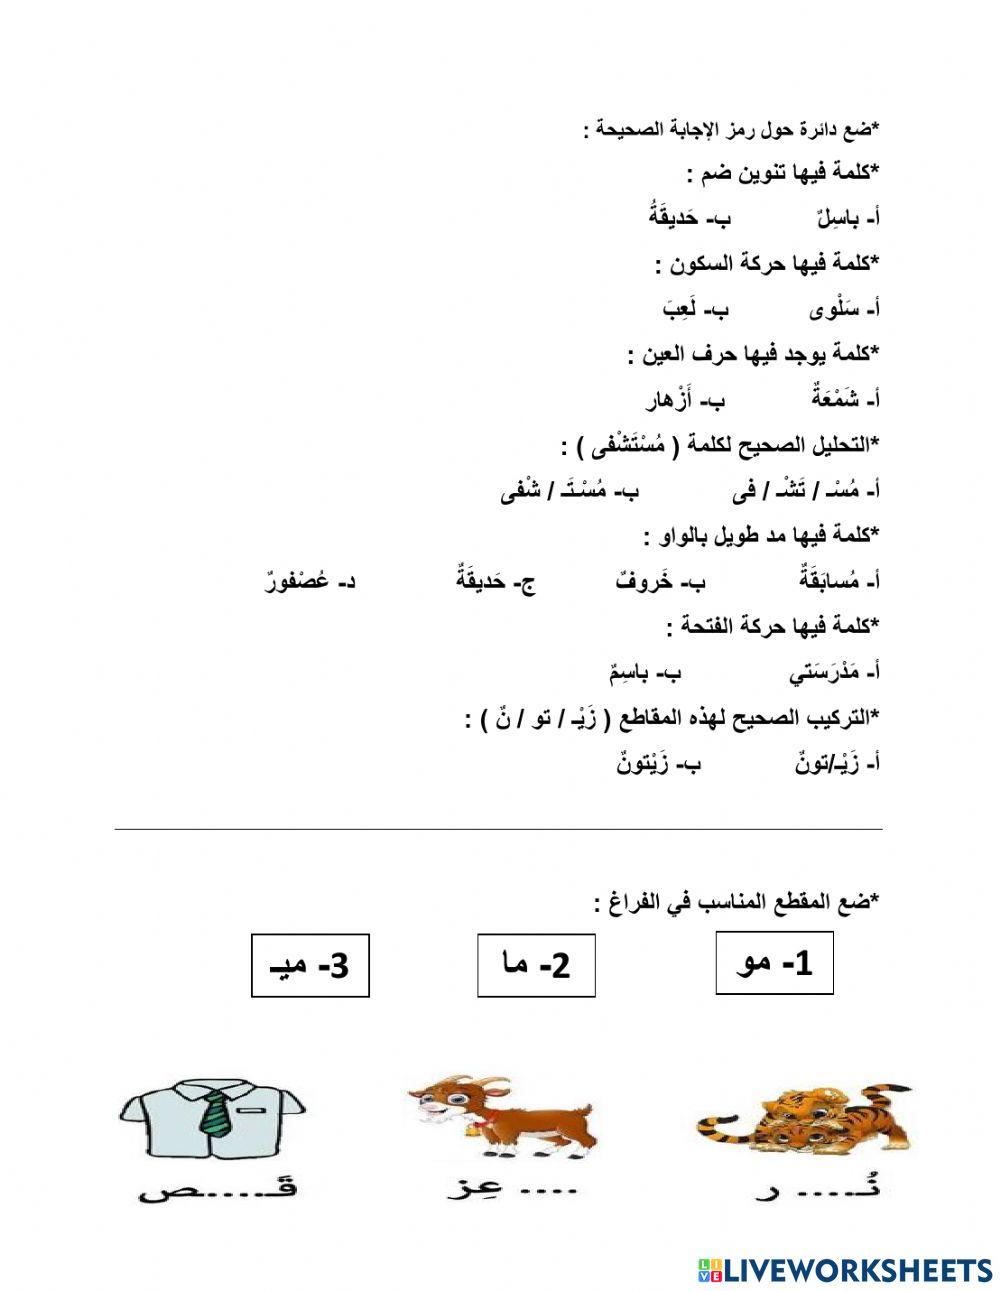 ورقة عمل تفاعلية للغة العربية